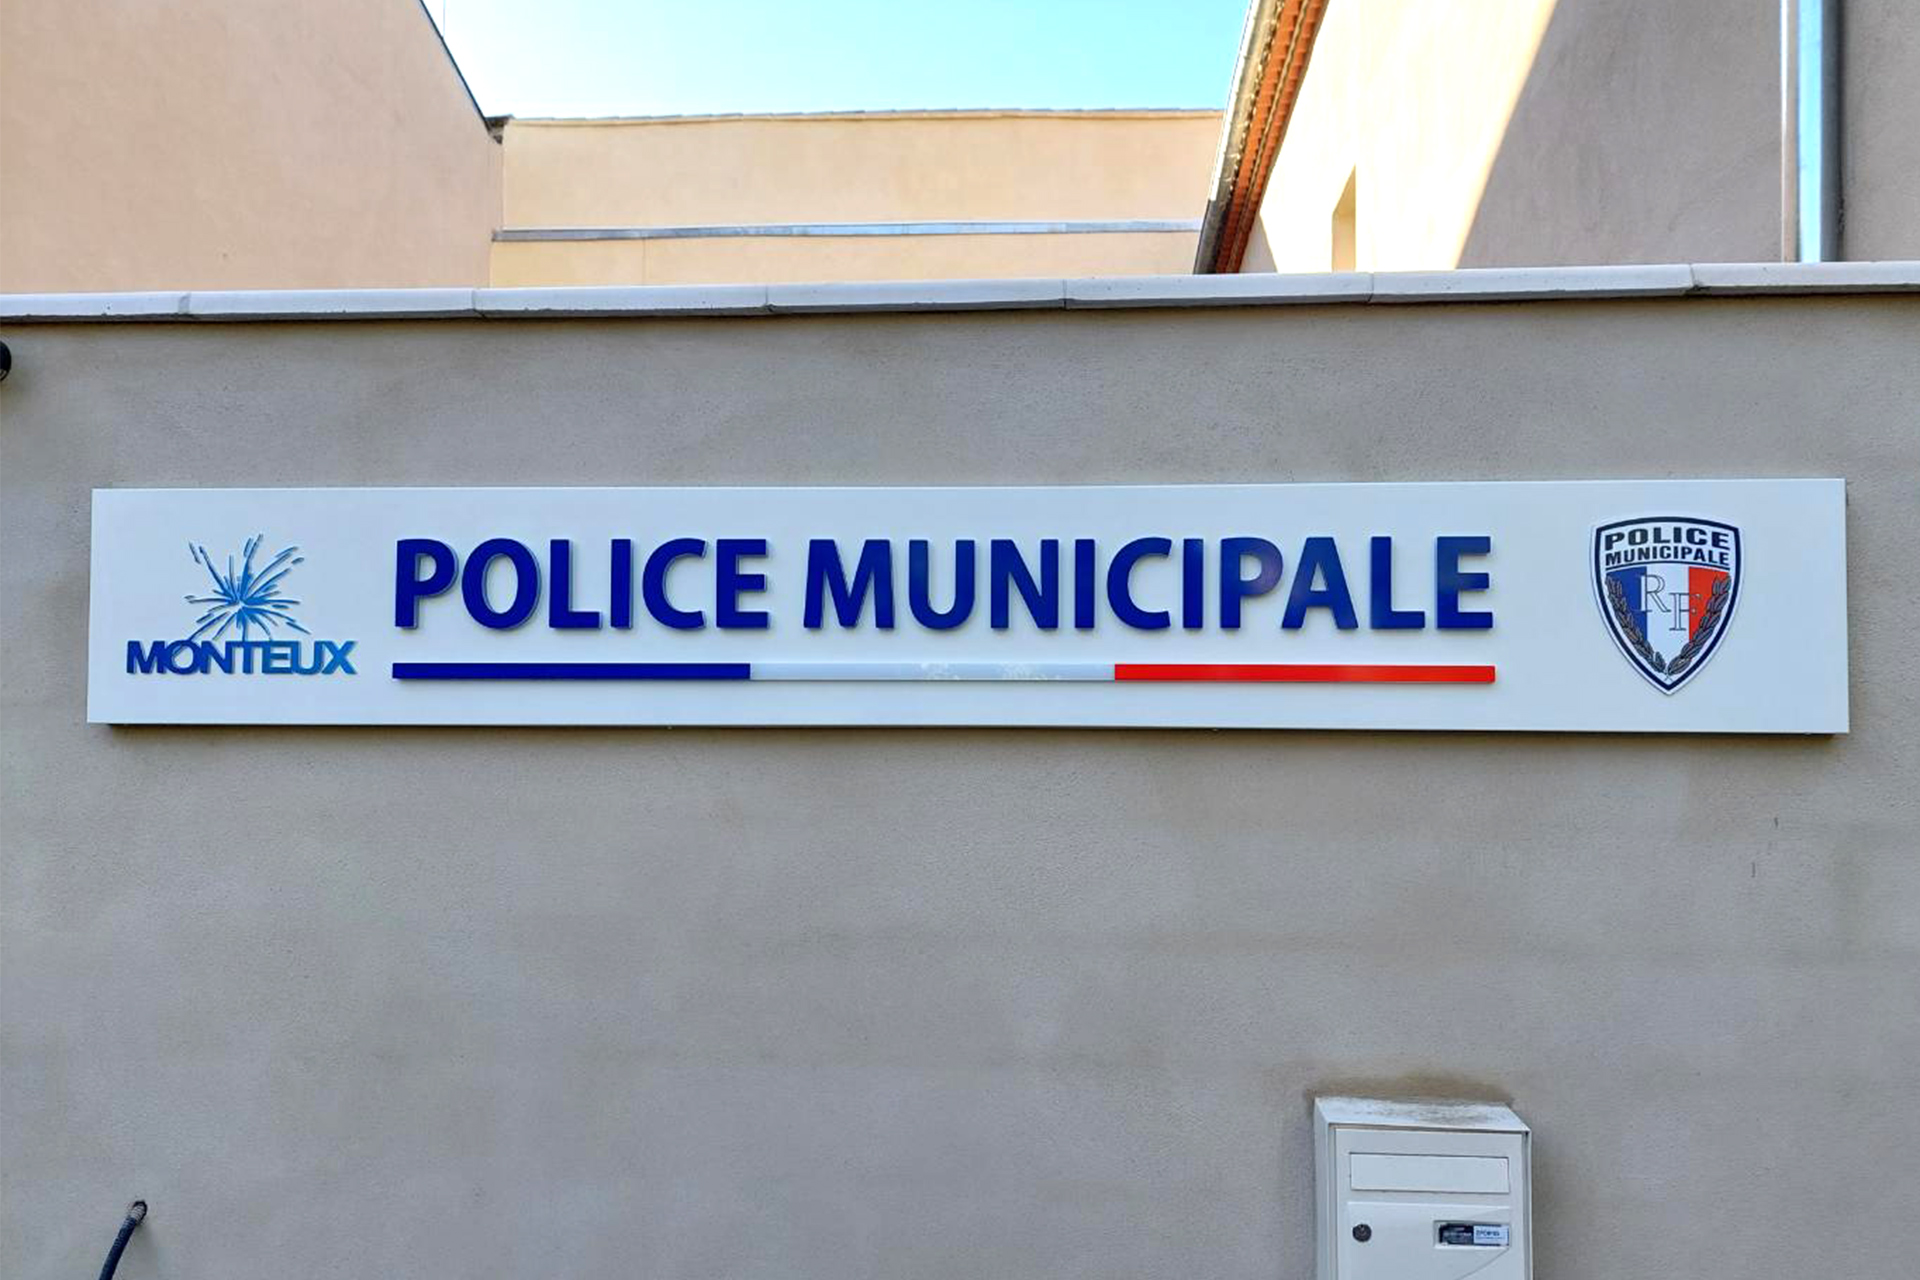 Police-municipale-Monteux-1